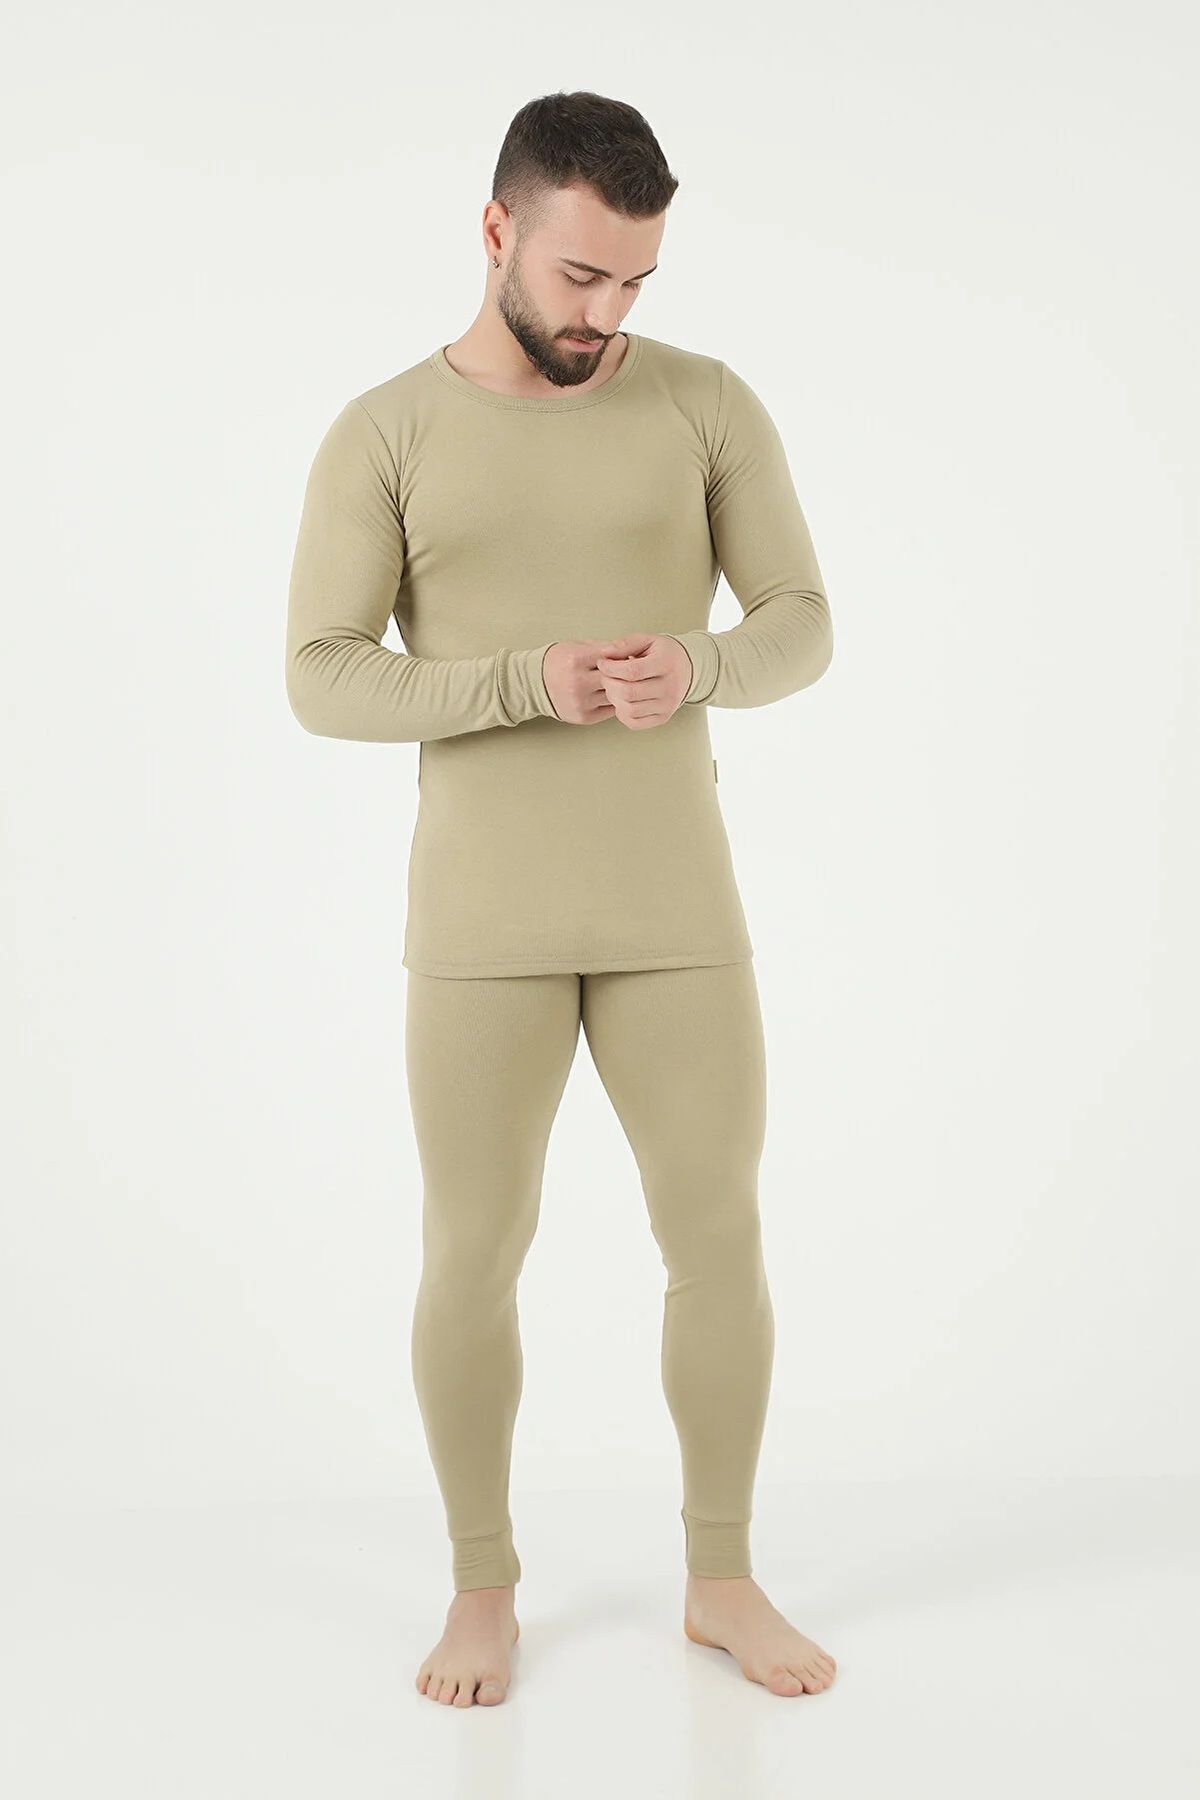 Swana Men's Winter Thermal Underwear Set with Fleece - Trendyol